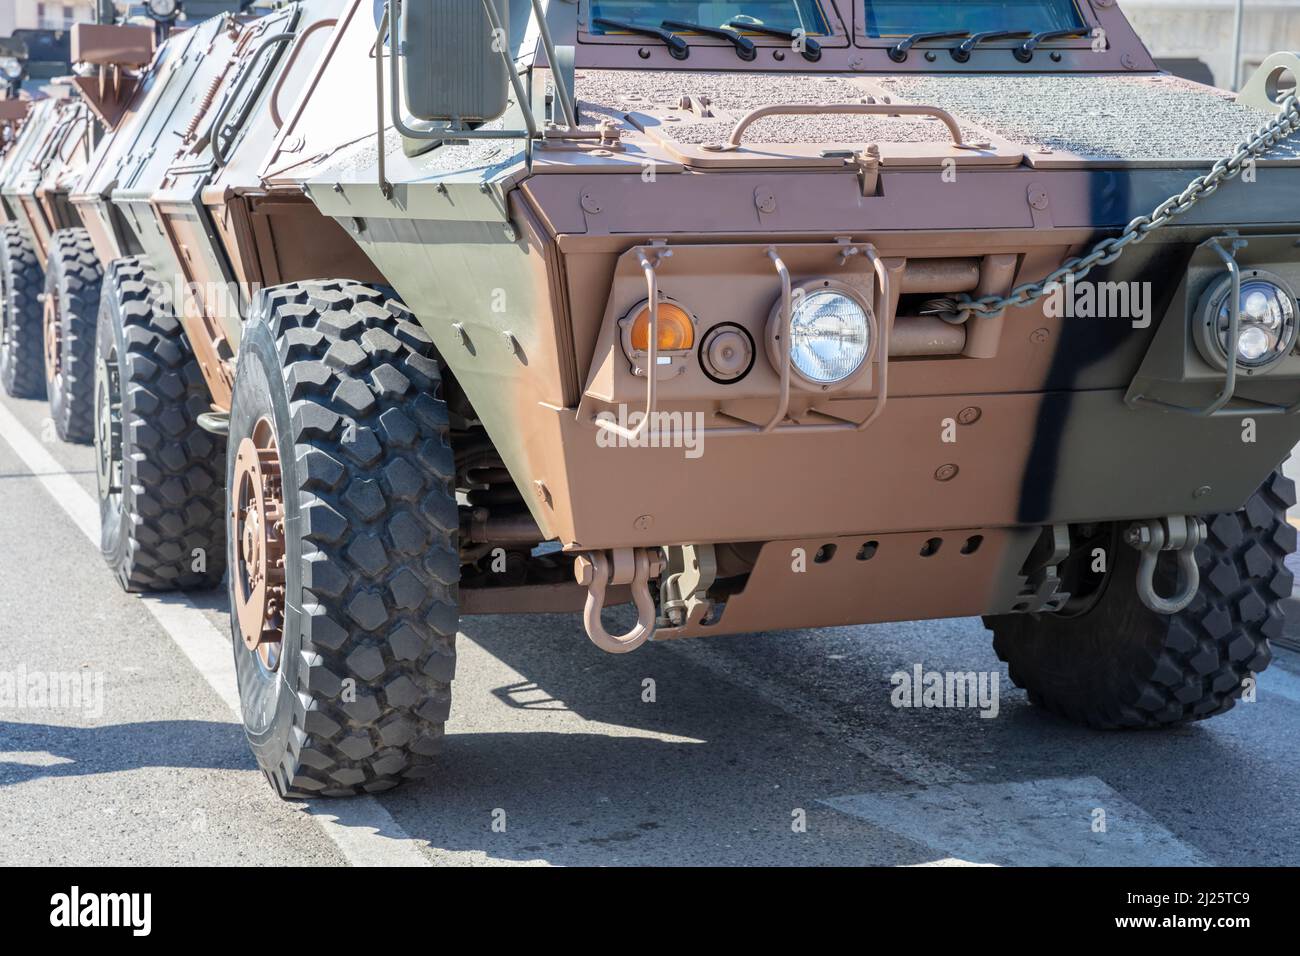 M1117 véhicule de sécurité blindé du gardien ASV, défilé militaire. Arme de guerre, véhicule couleur camouflage, vue rapprochée. Machine militaire Banque D'Images